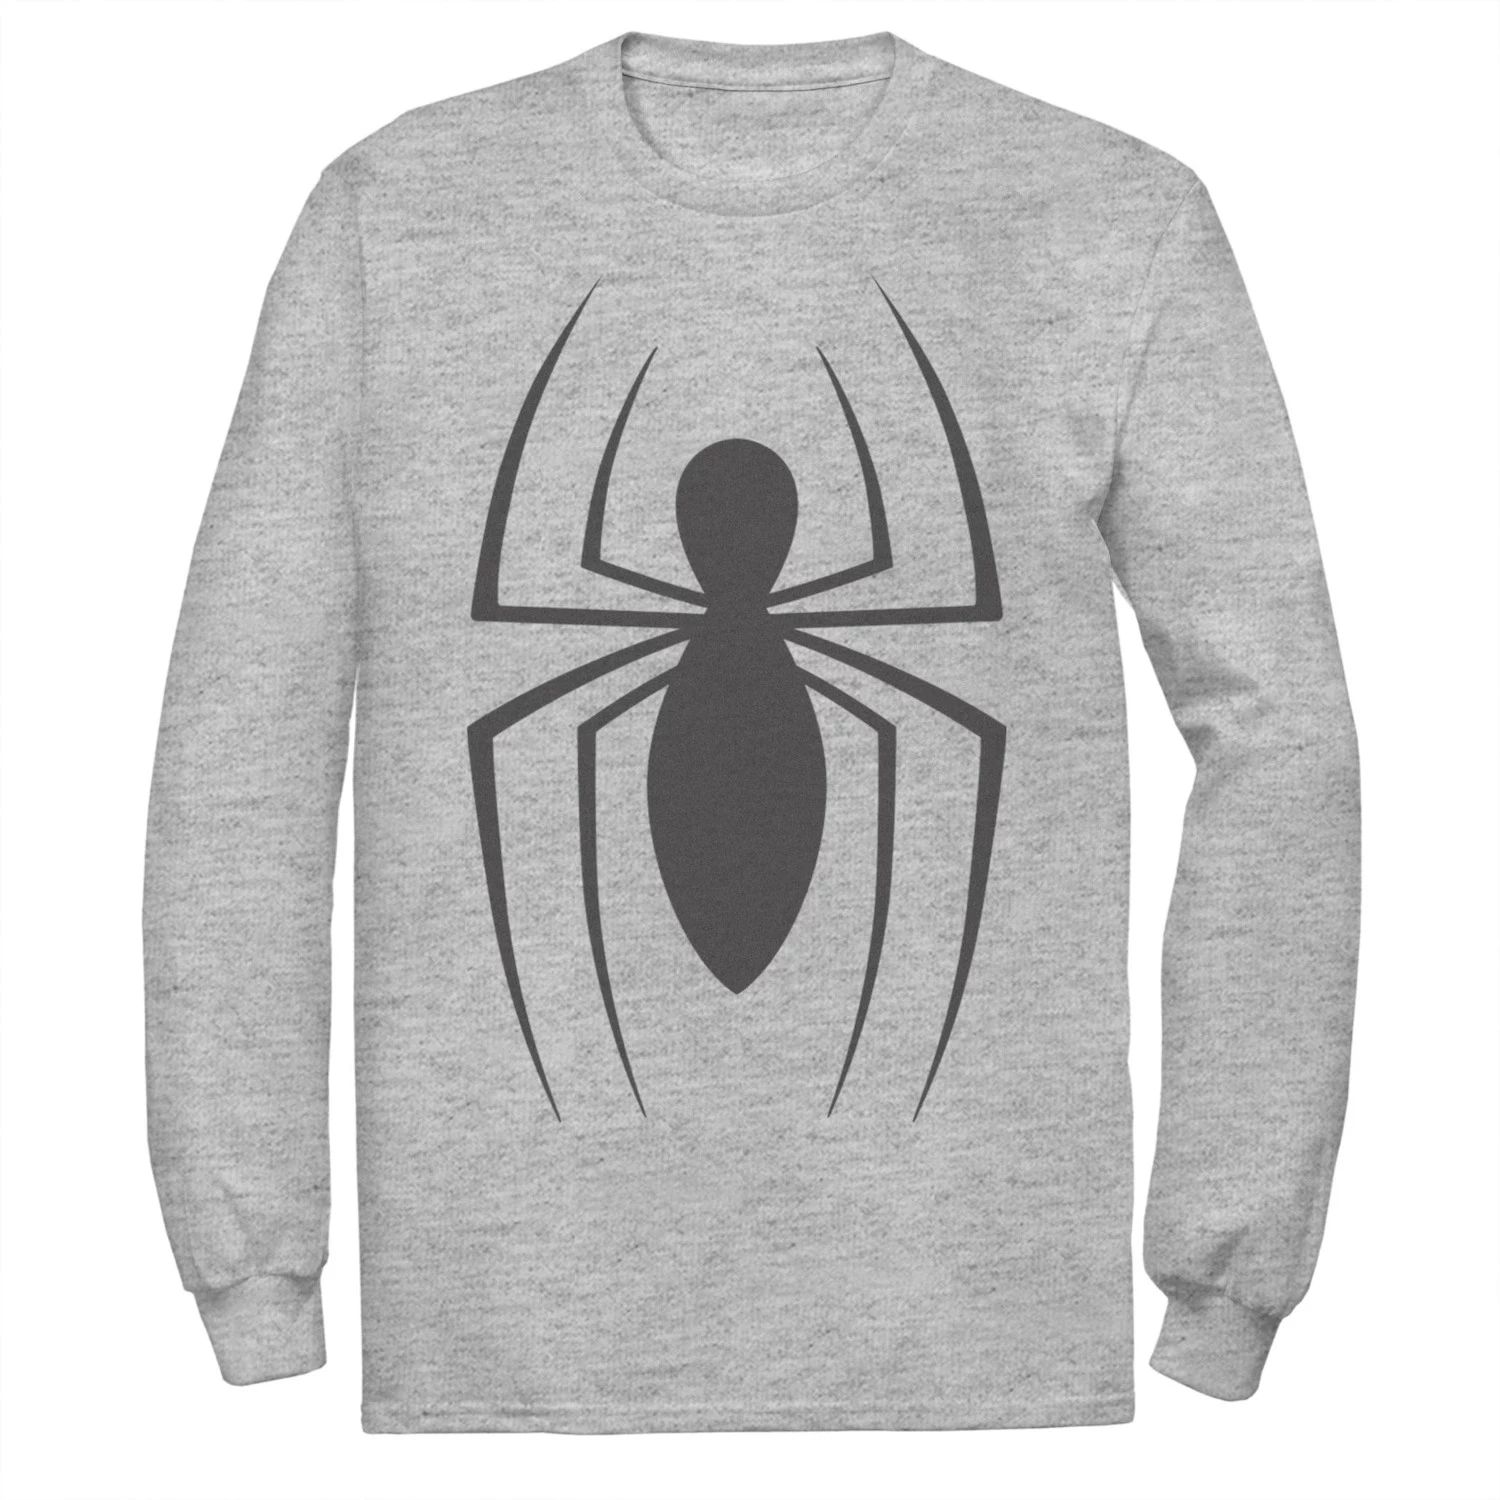 Мужская классическая футболка с логотипом Spider-Man Marvel Spider-Man мужская футболка spider man m зеленый